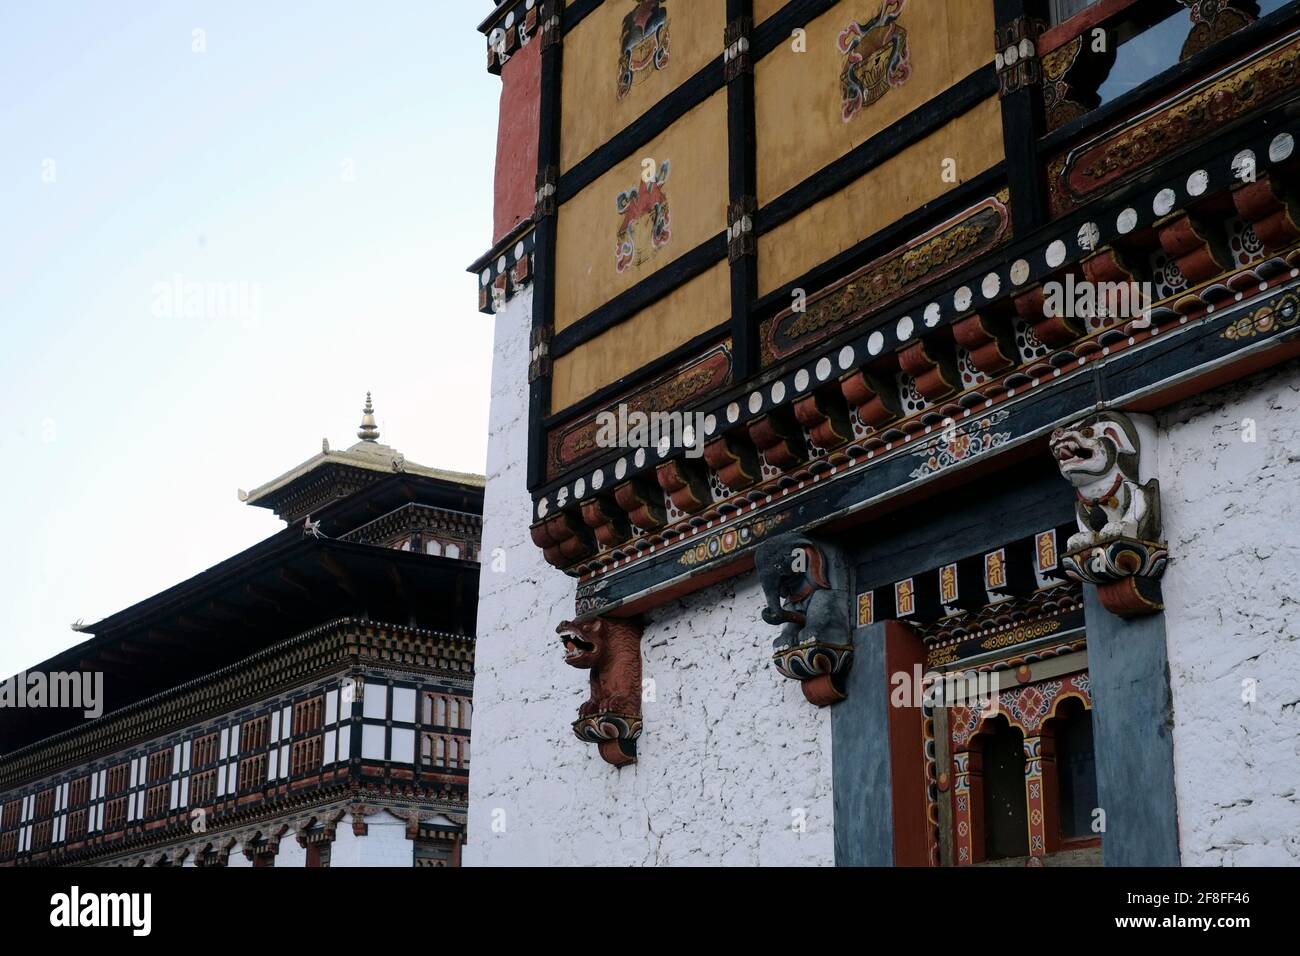 Façade en bois peinte à la main de bâtiments au siège de la forteresse de Tashichho Dzong Du gouvernement du Bhoutan depuis 1952 et abrite actuellement le trône chambre et bureaux du roi au bord de La ville de Thimphu la capitale du Bhoutan Banque D'Images